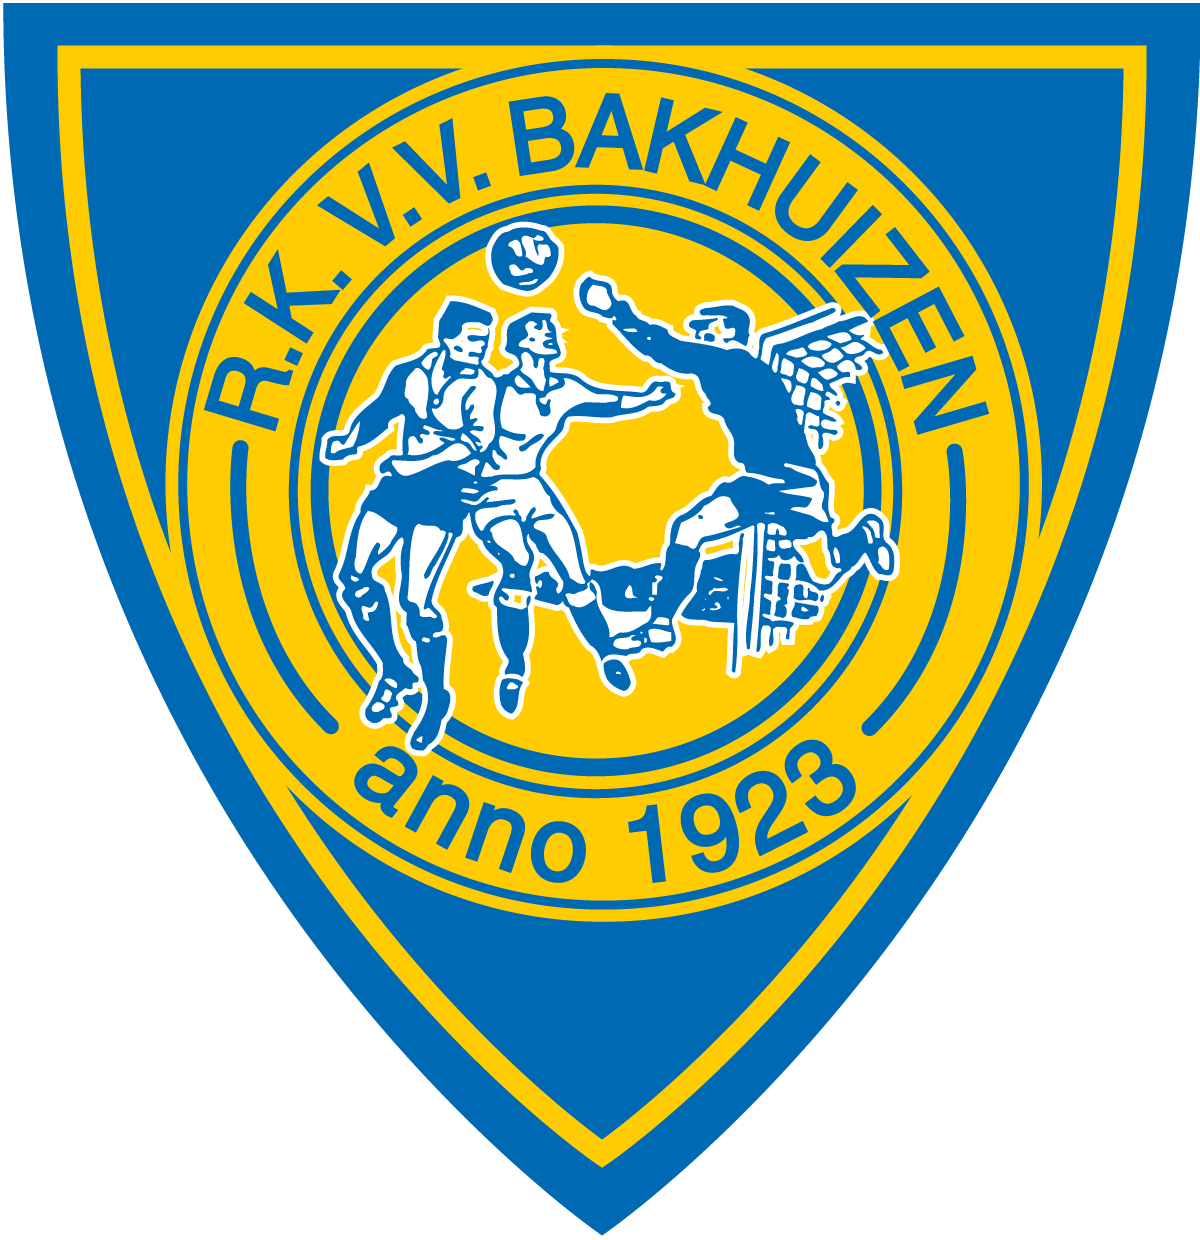 RKVV BakhuizenShop Logo